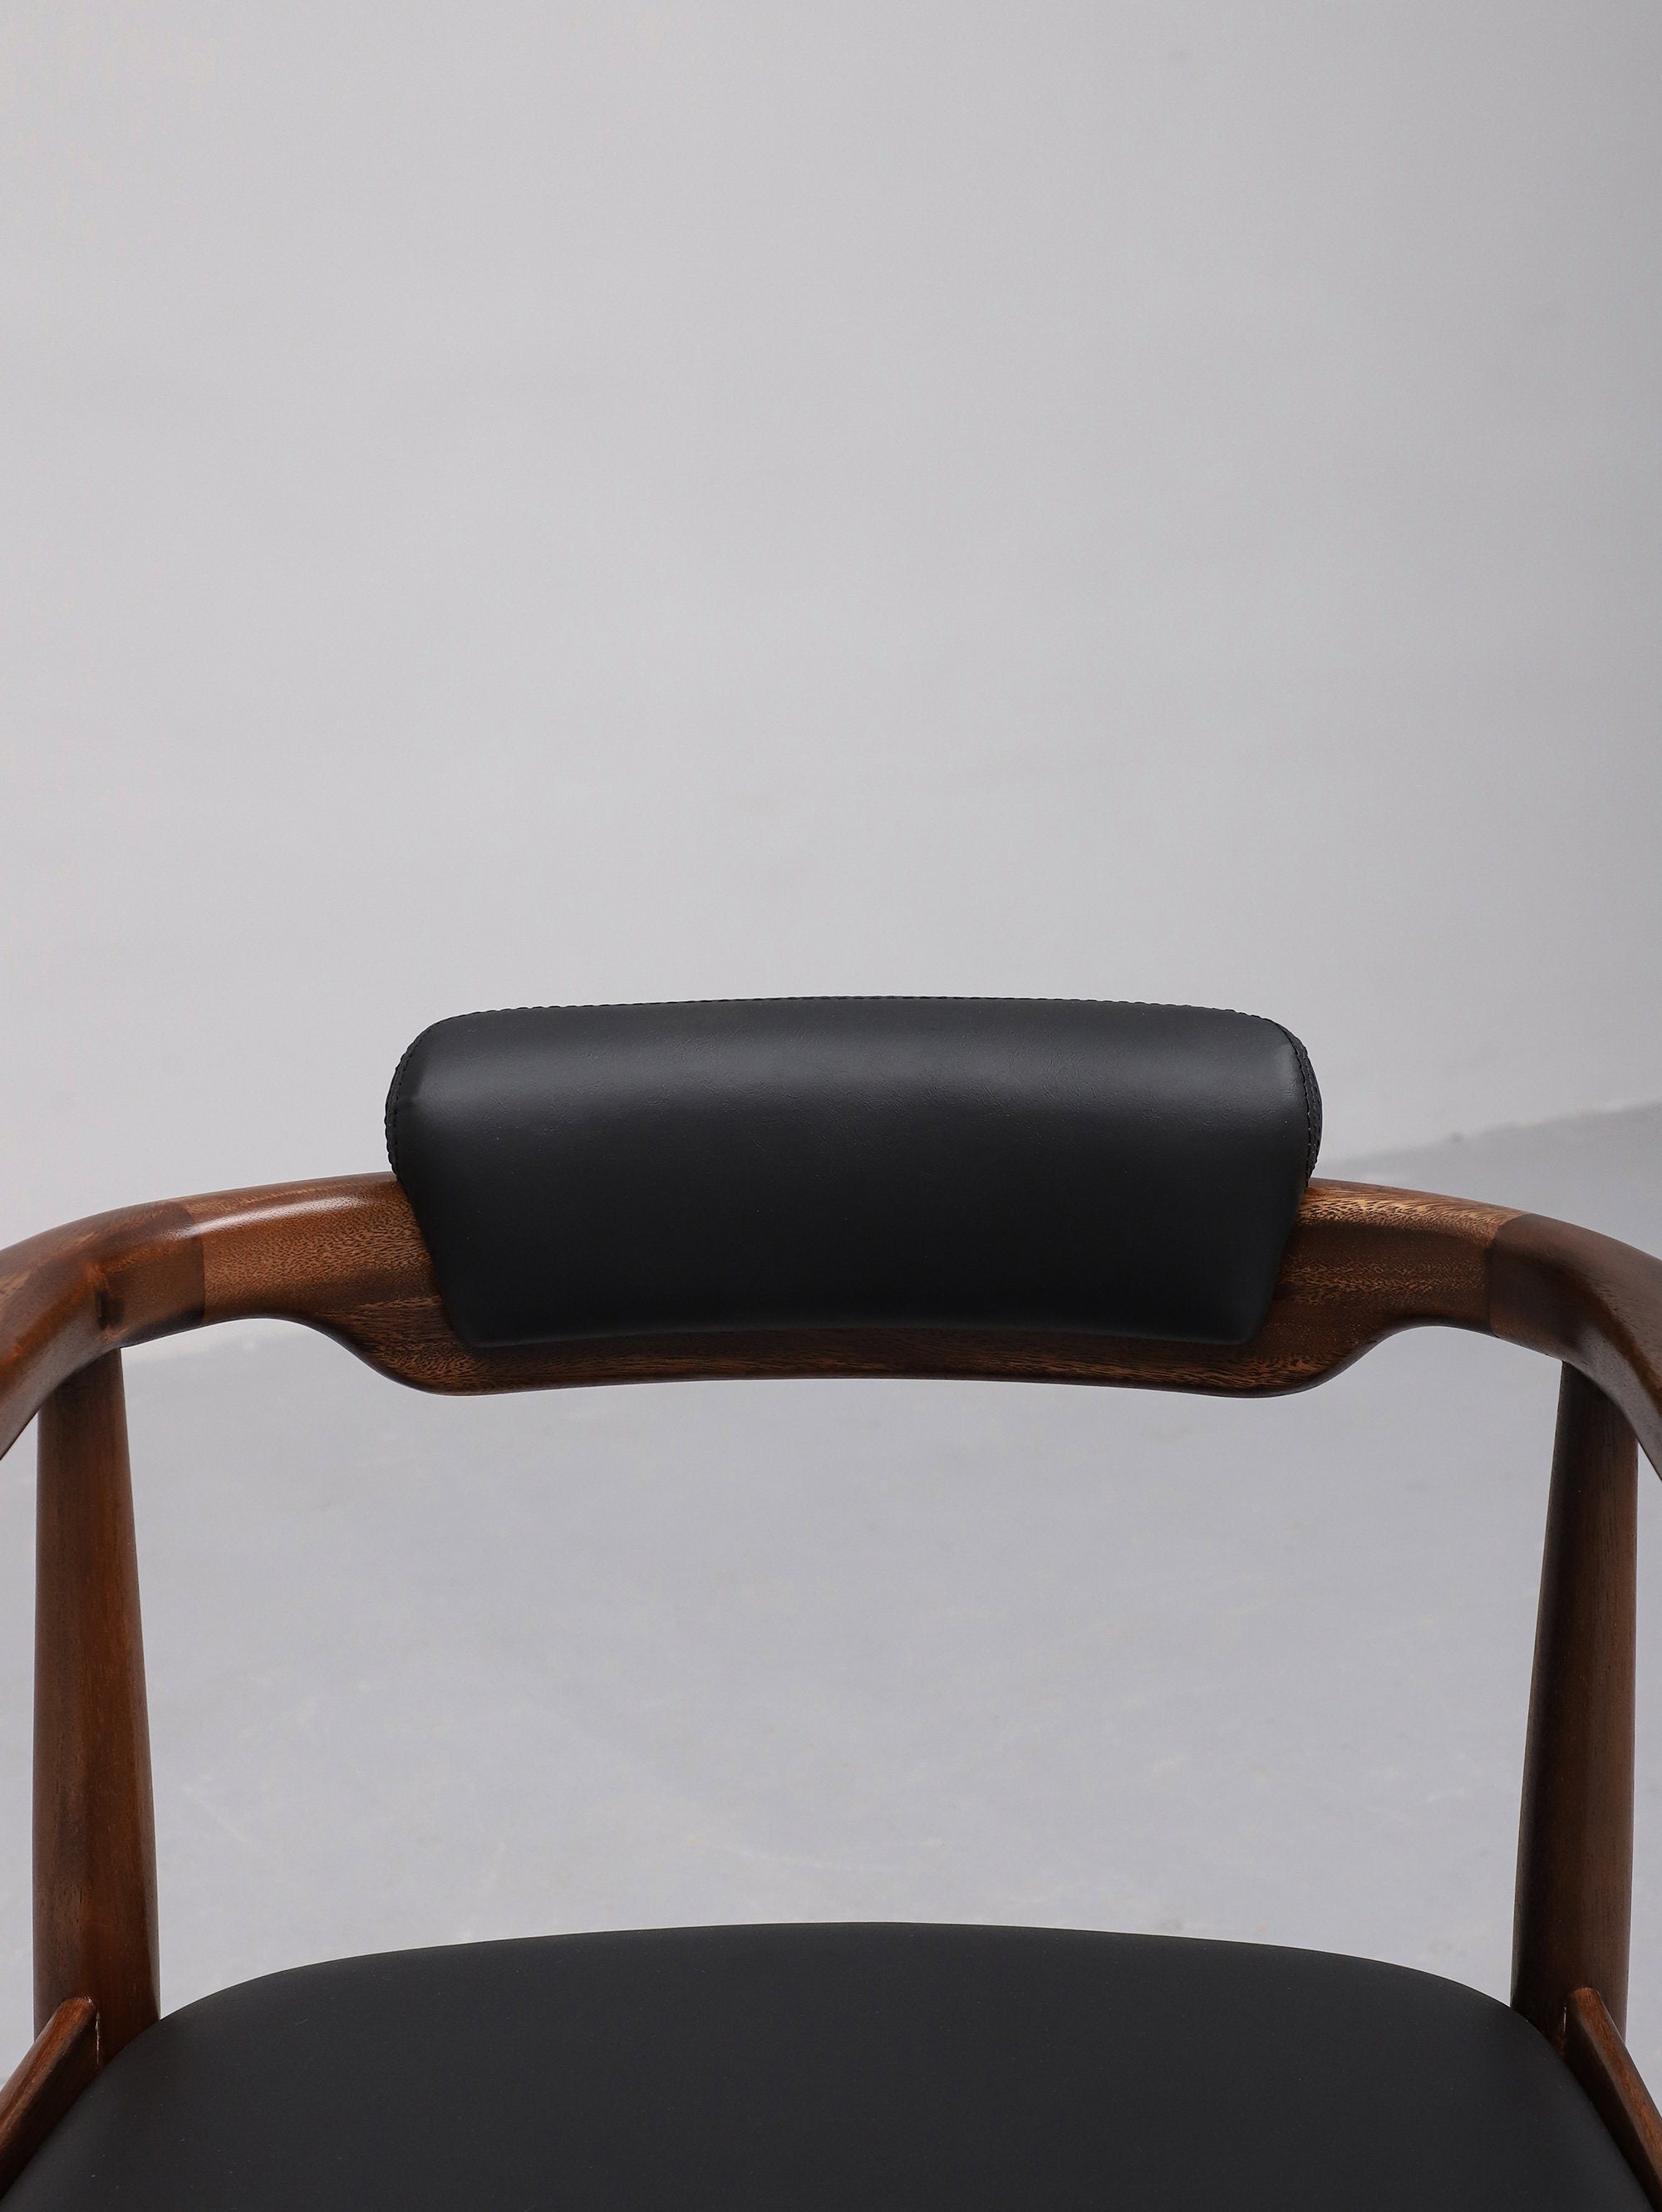 silla de cuero negro, silla acolchada de tela, silla de nogal, cuero, madera de alta calidad